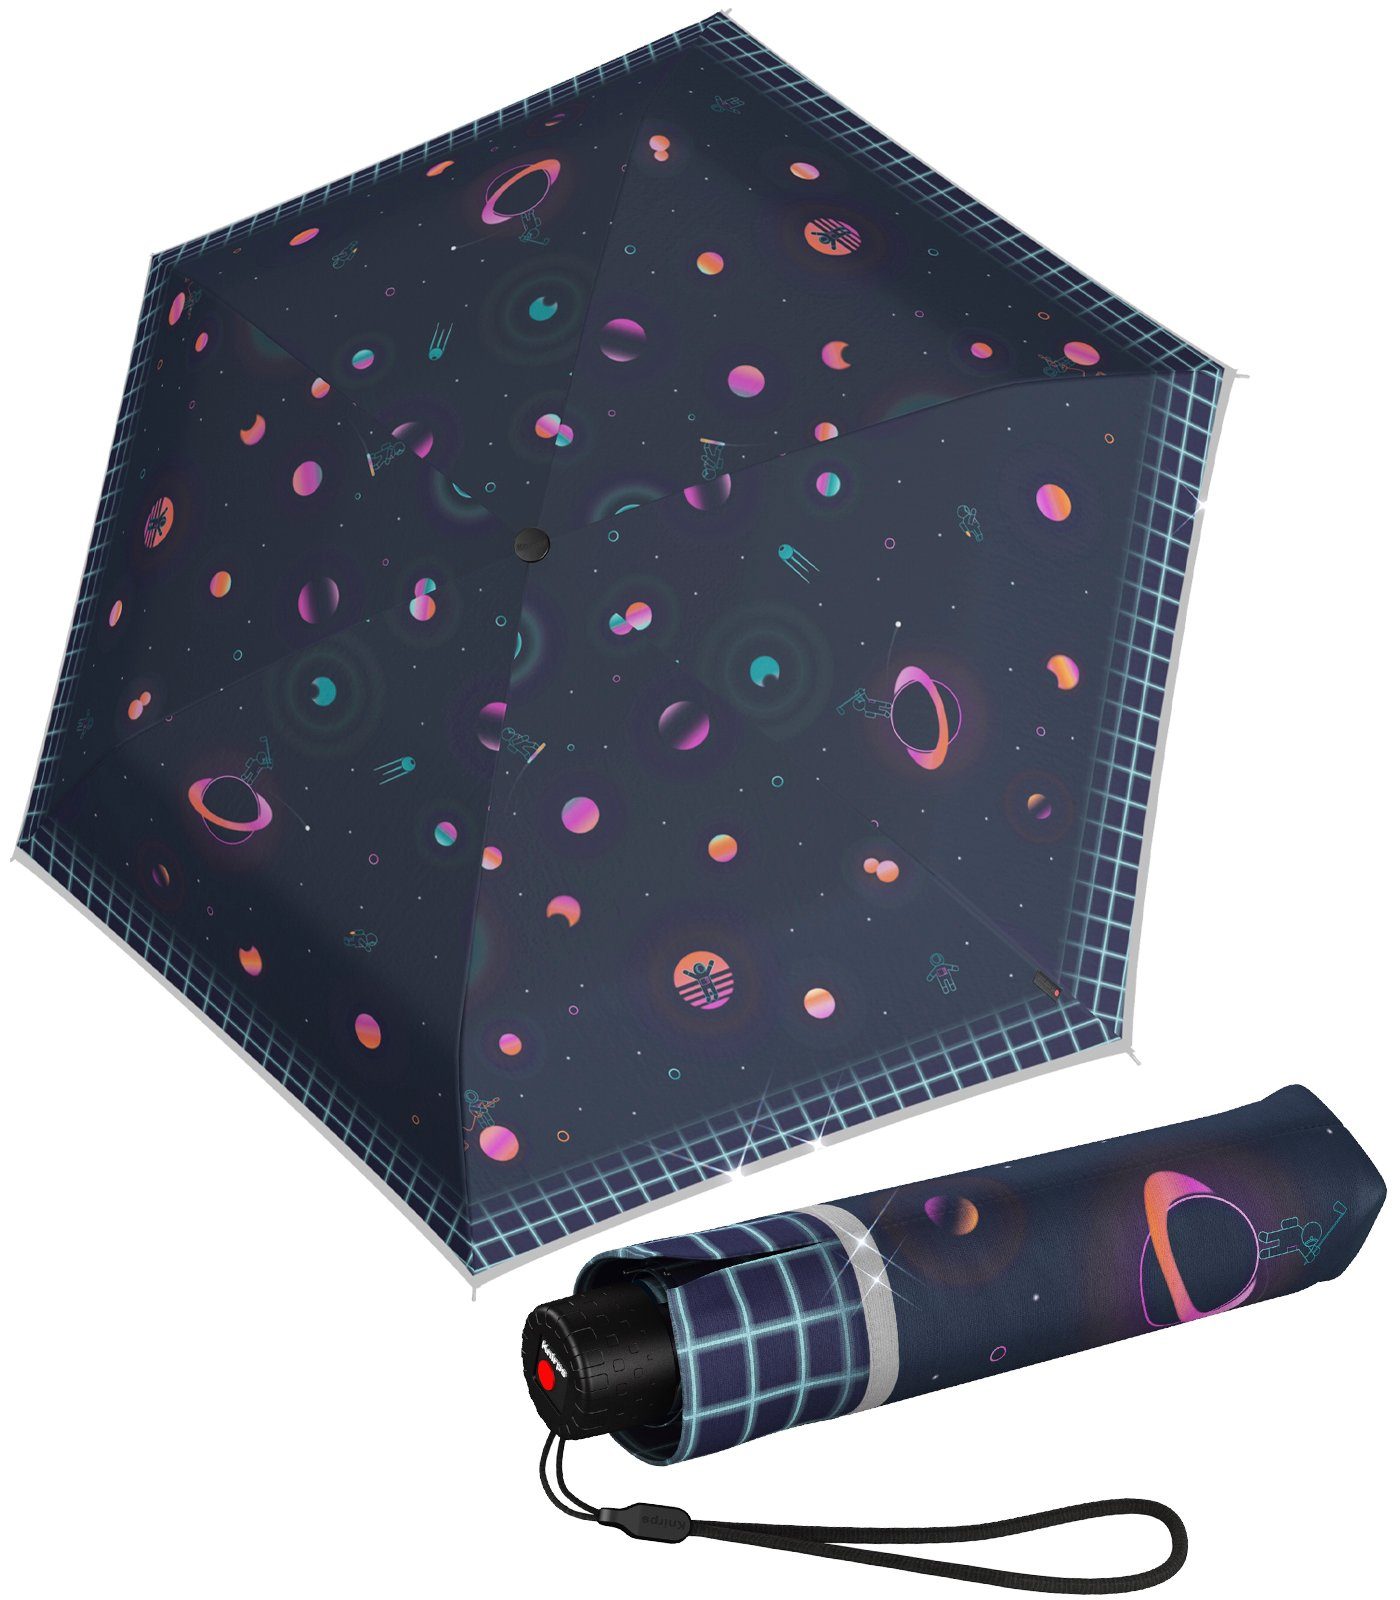 Rookie reflective Reflexborte, besonders Moonmen Knirps® - Kinderschirm auffallend reflektierend mit Taschenregenschirm